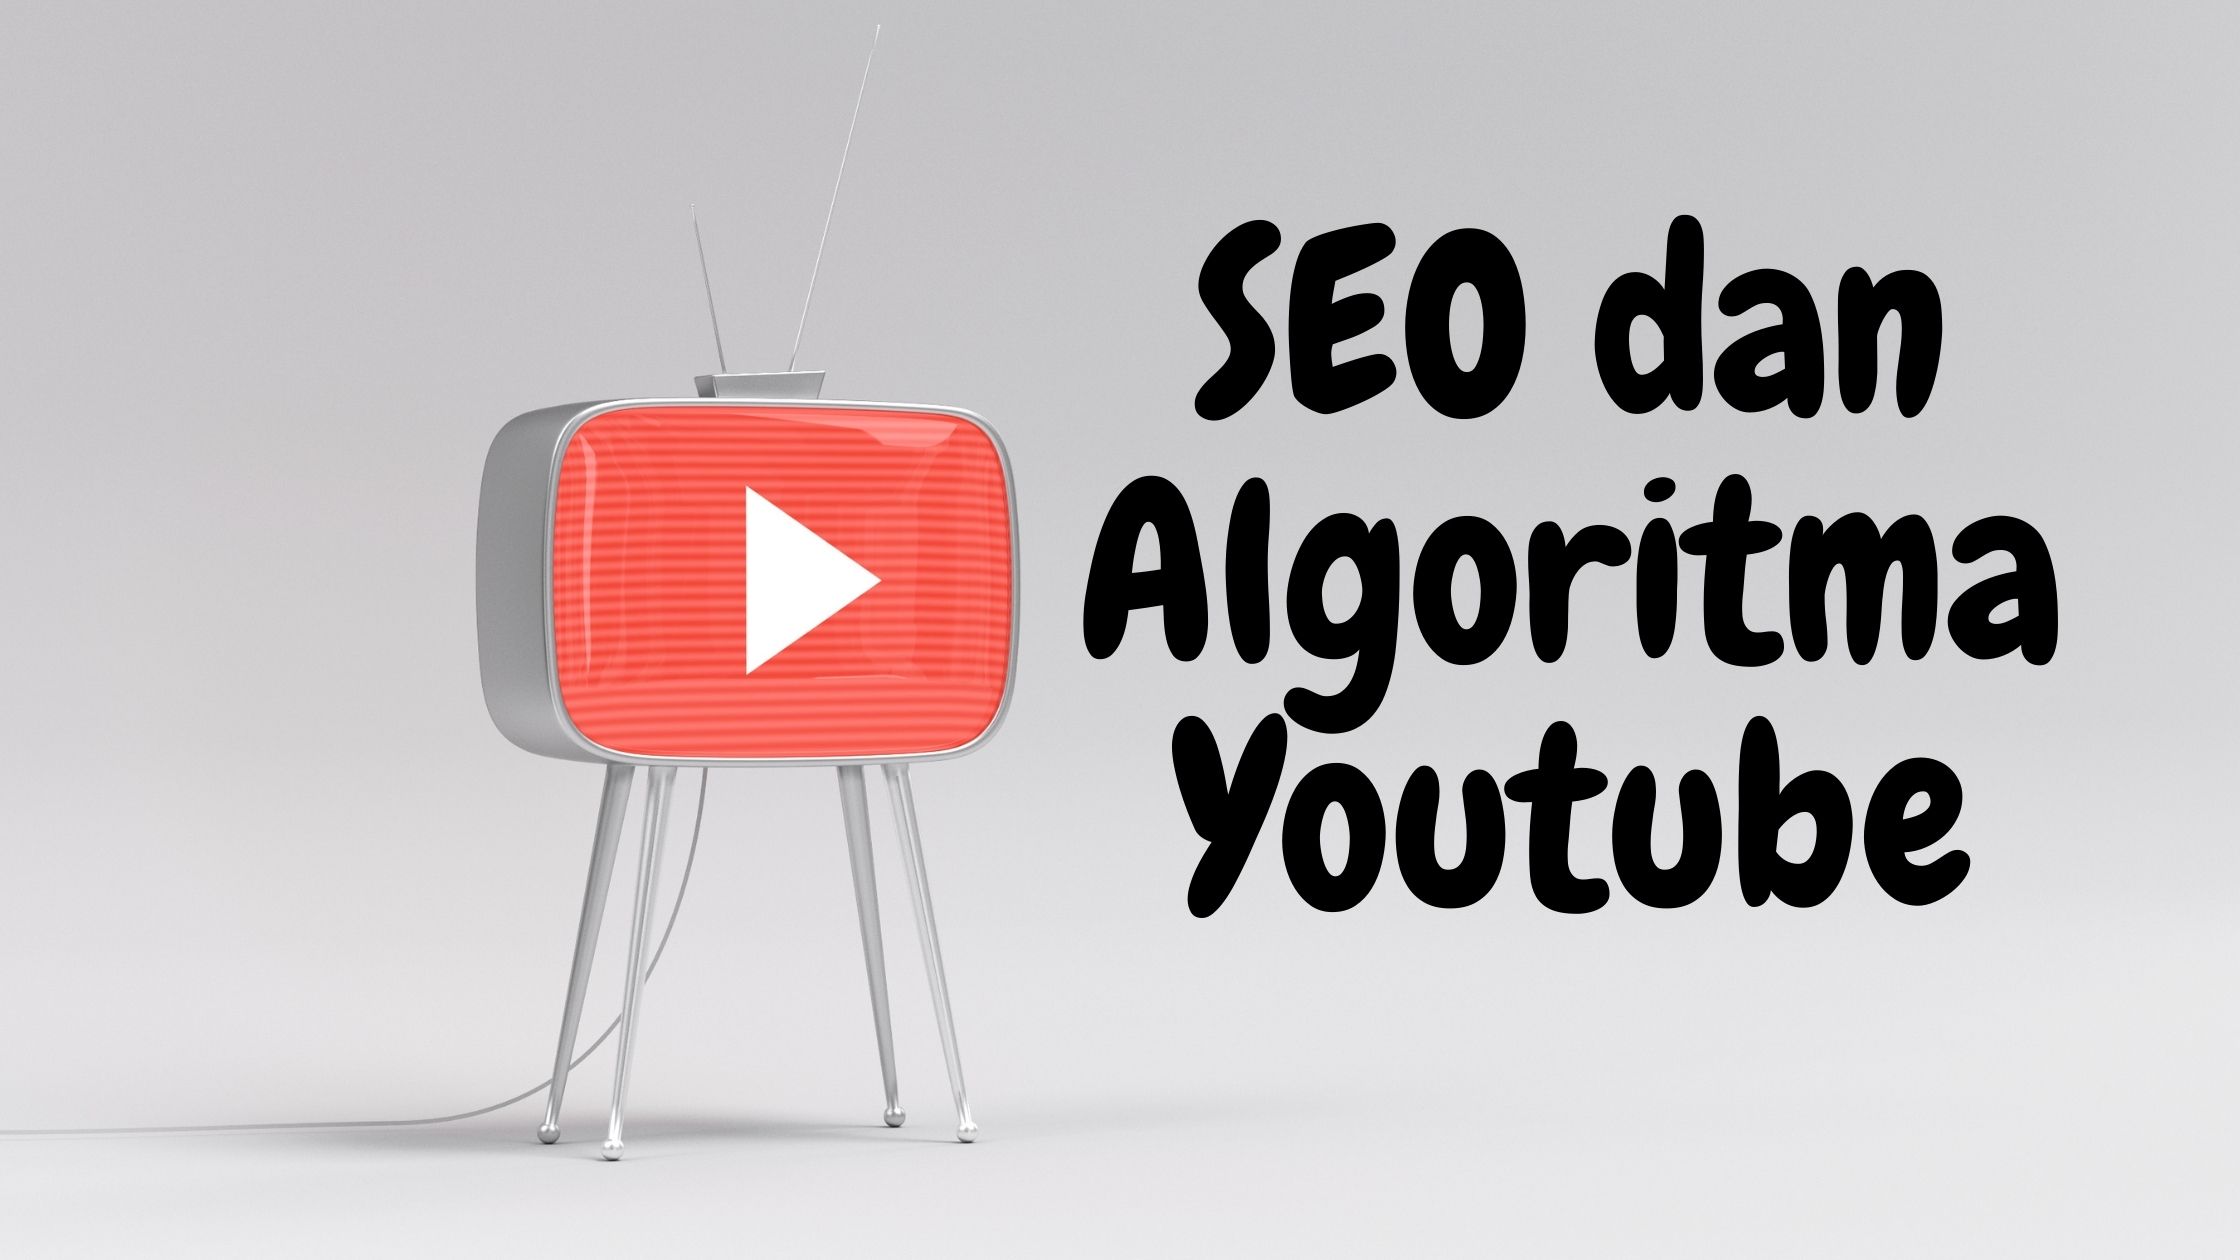 SEO dan Algoritma Youtube